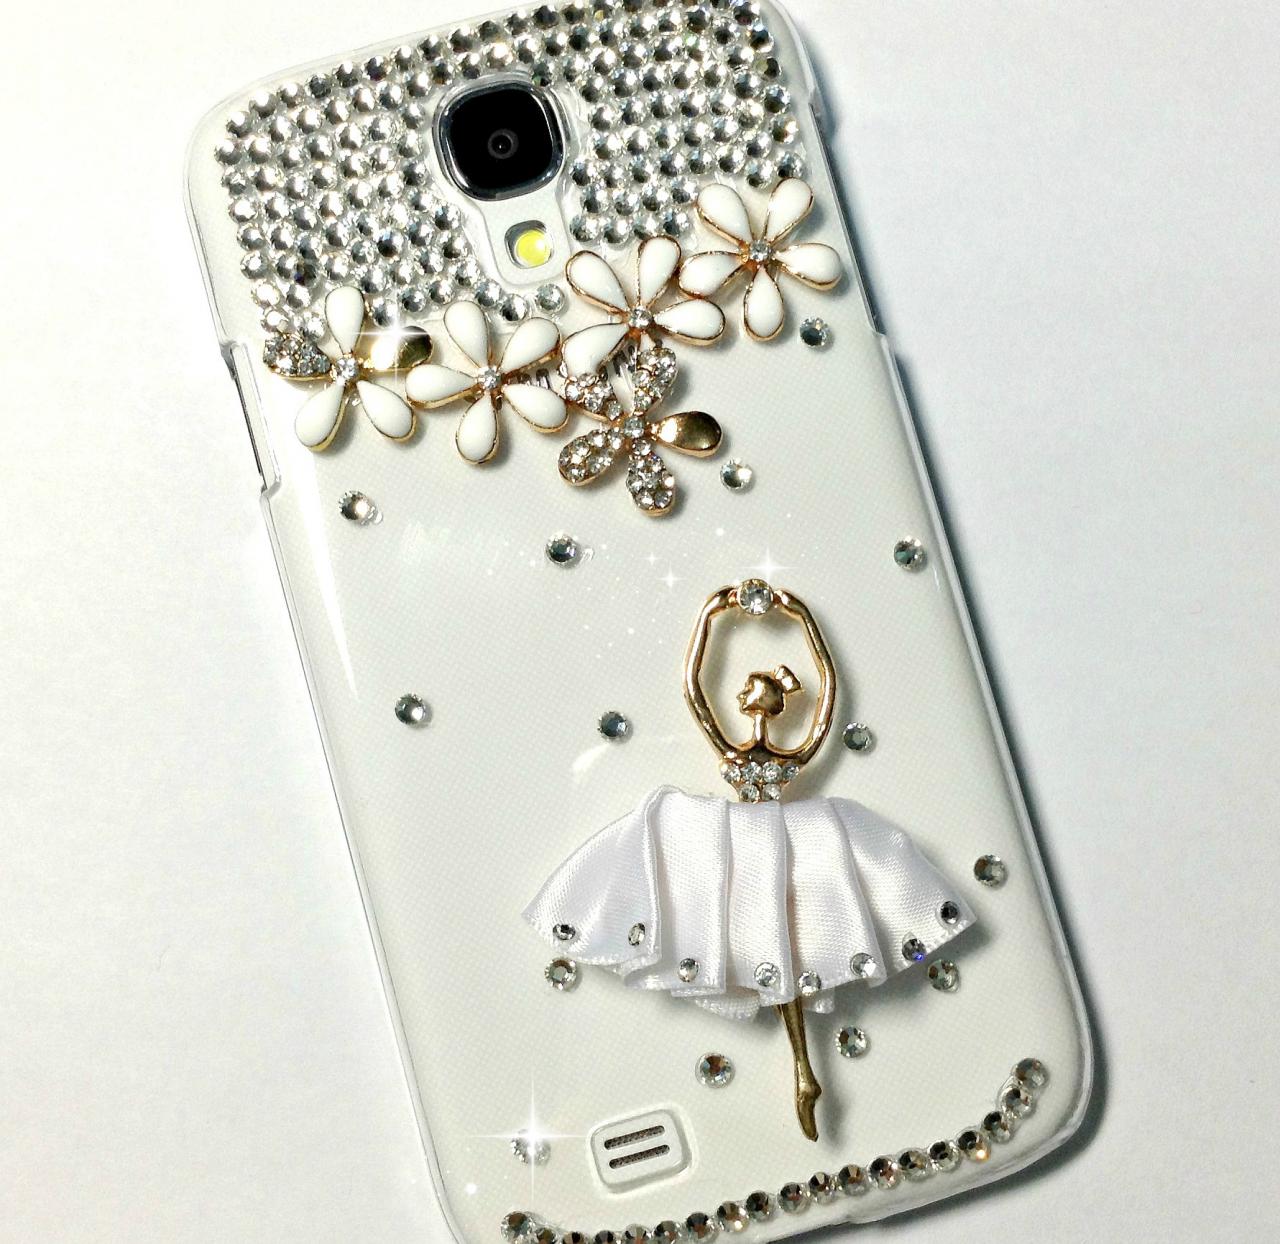 3d Handmade White Ballet Dancing Girl Design Case Cover For Samsung Galaxy S 4 S4 Iv Lte I9500 I9505